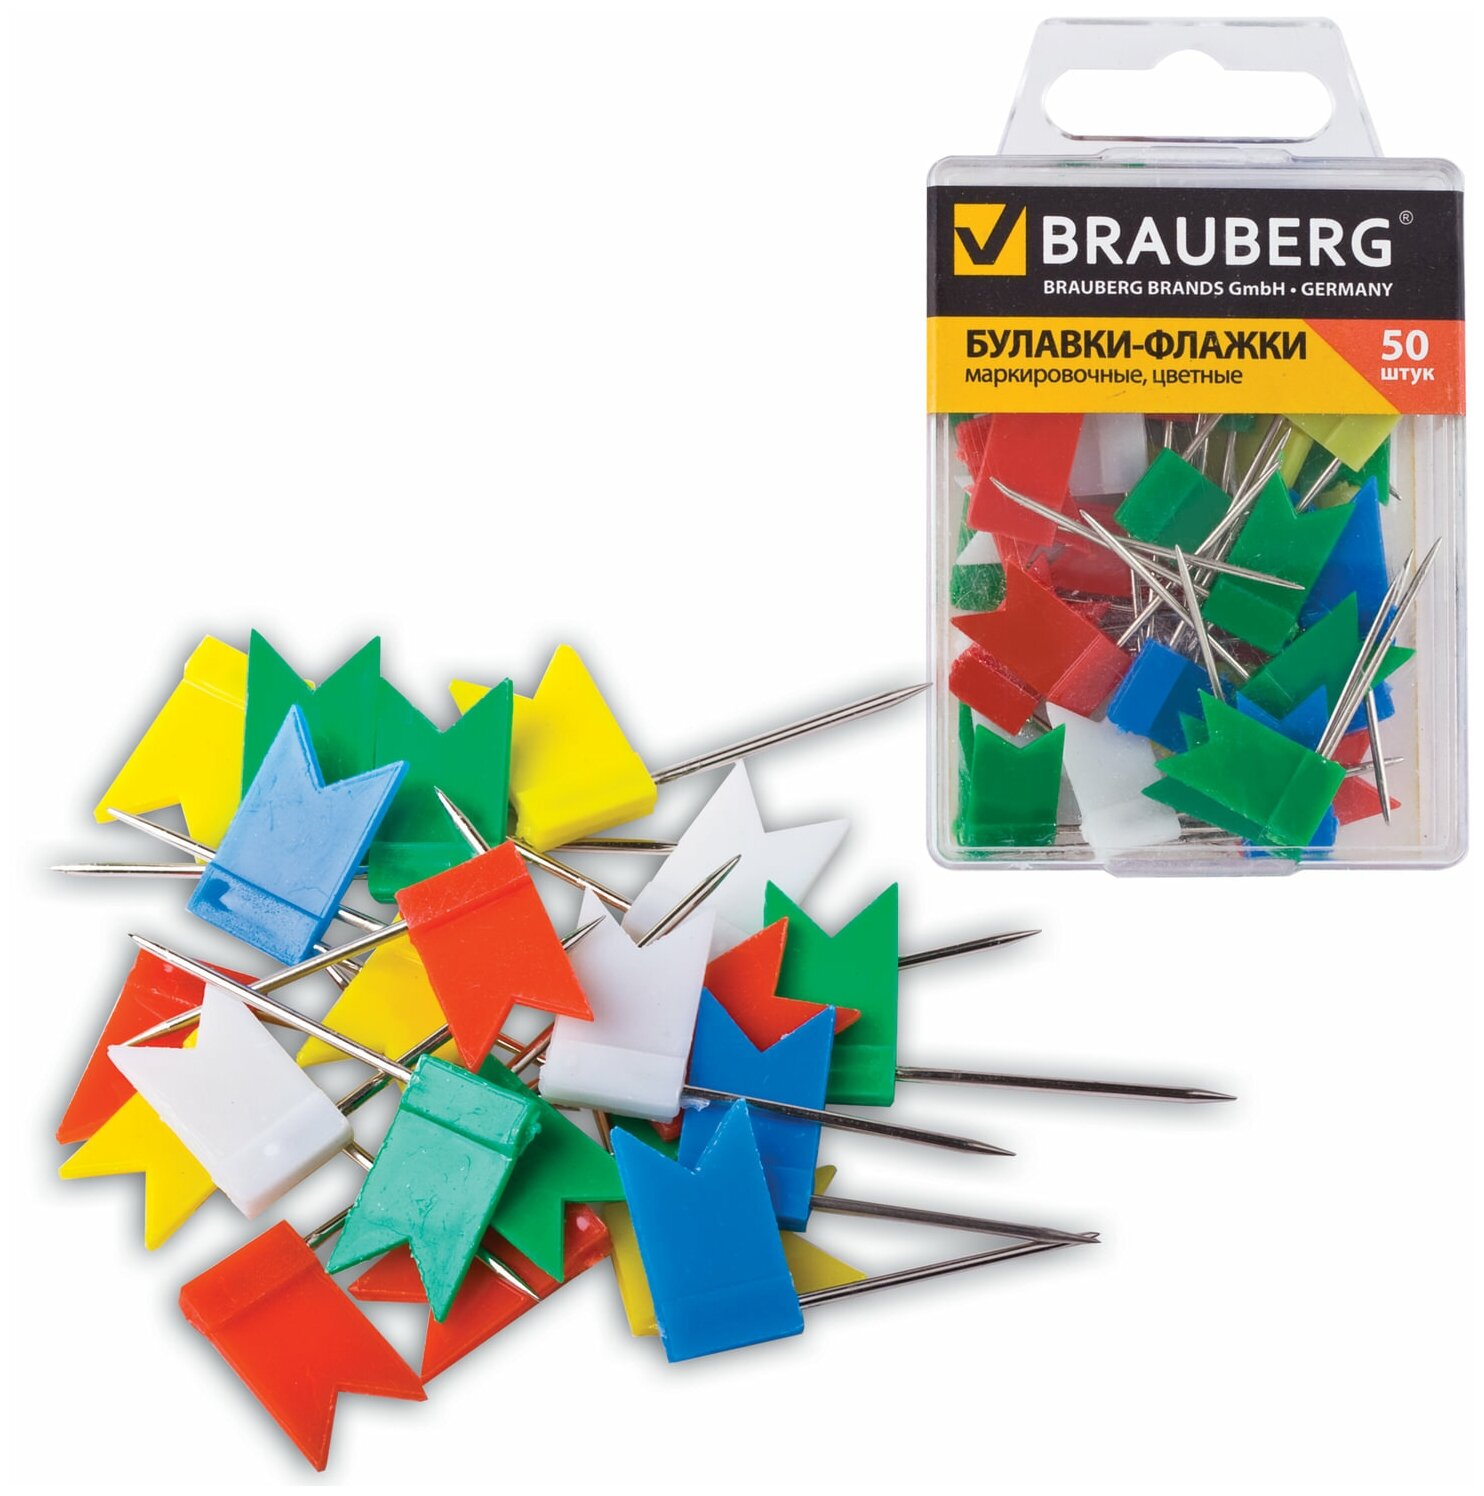 Булавки-флажки Brauberg маркировочные цветные, 50 шт (221537)